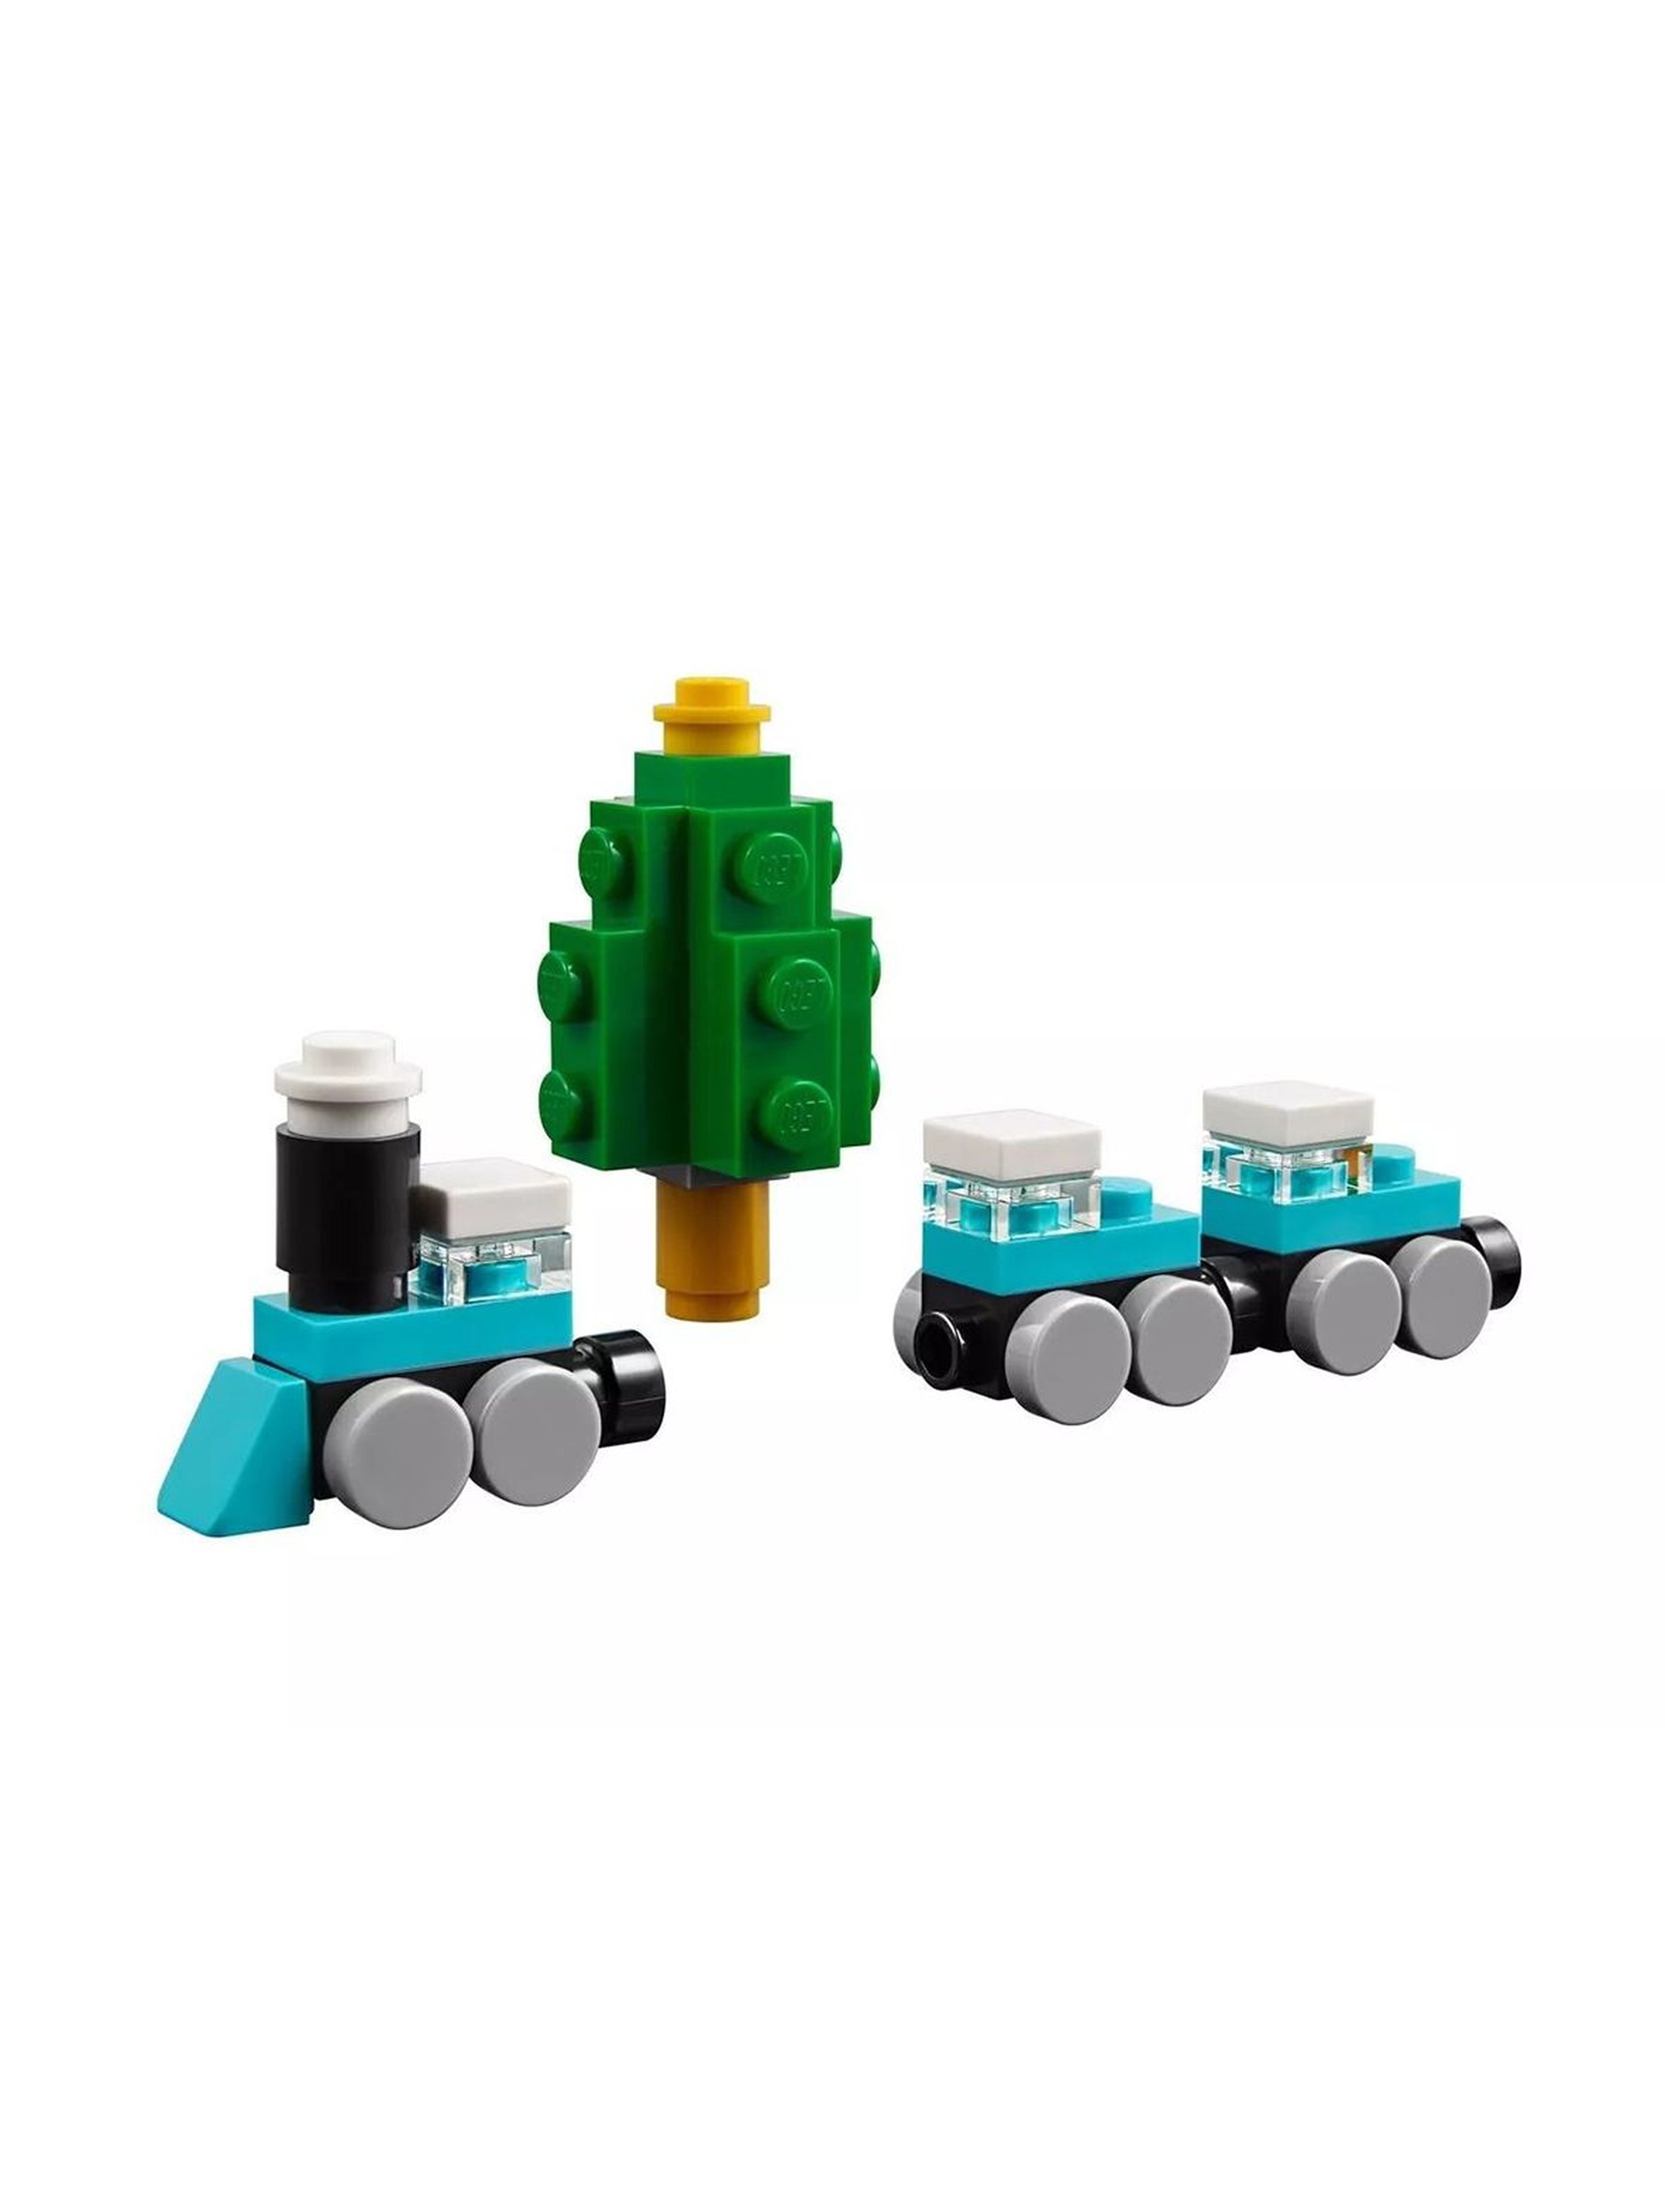 LEGO® 40293 Bożonarodzeniowa karuzela wiek 7+